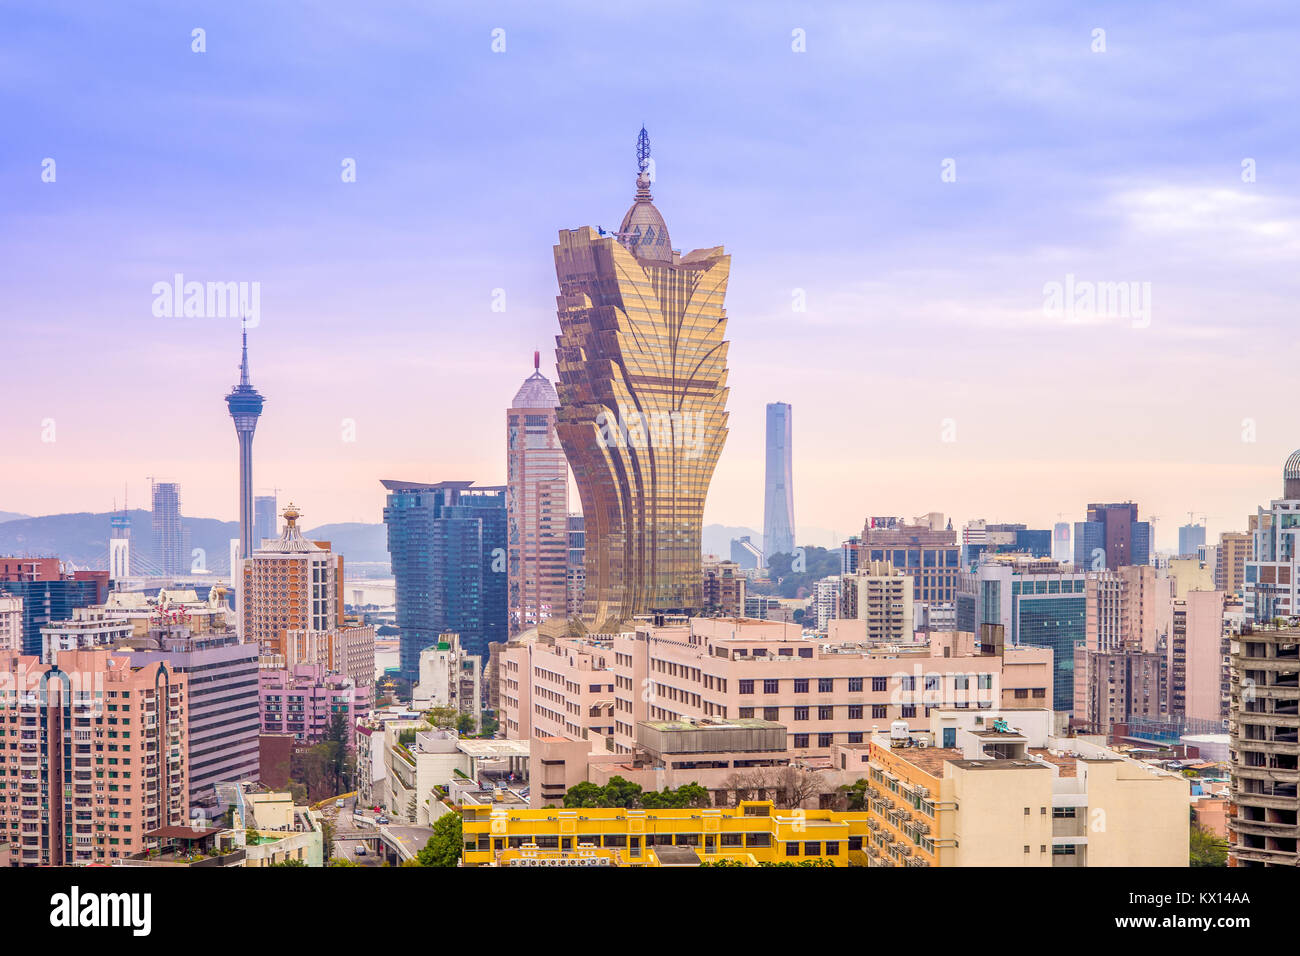 cityscape of macao, china Stock Photo